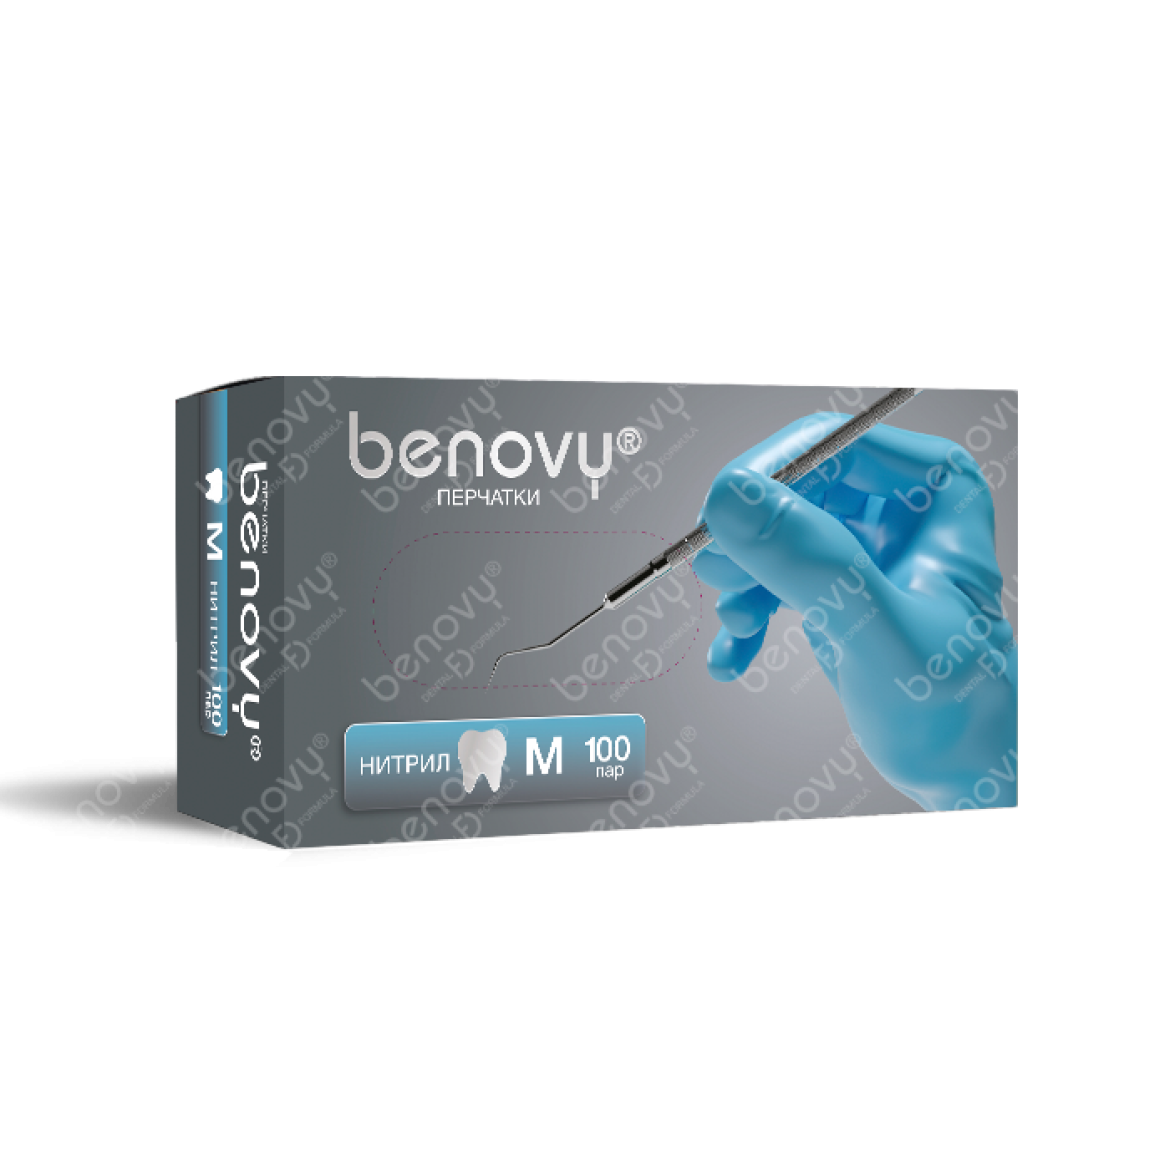 Перчатки нитриловые Benovy Dental Formula - текстурированные на пальцах, XS, S, M, 4гр., 100 пар, цвет: голубой